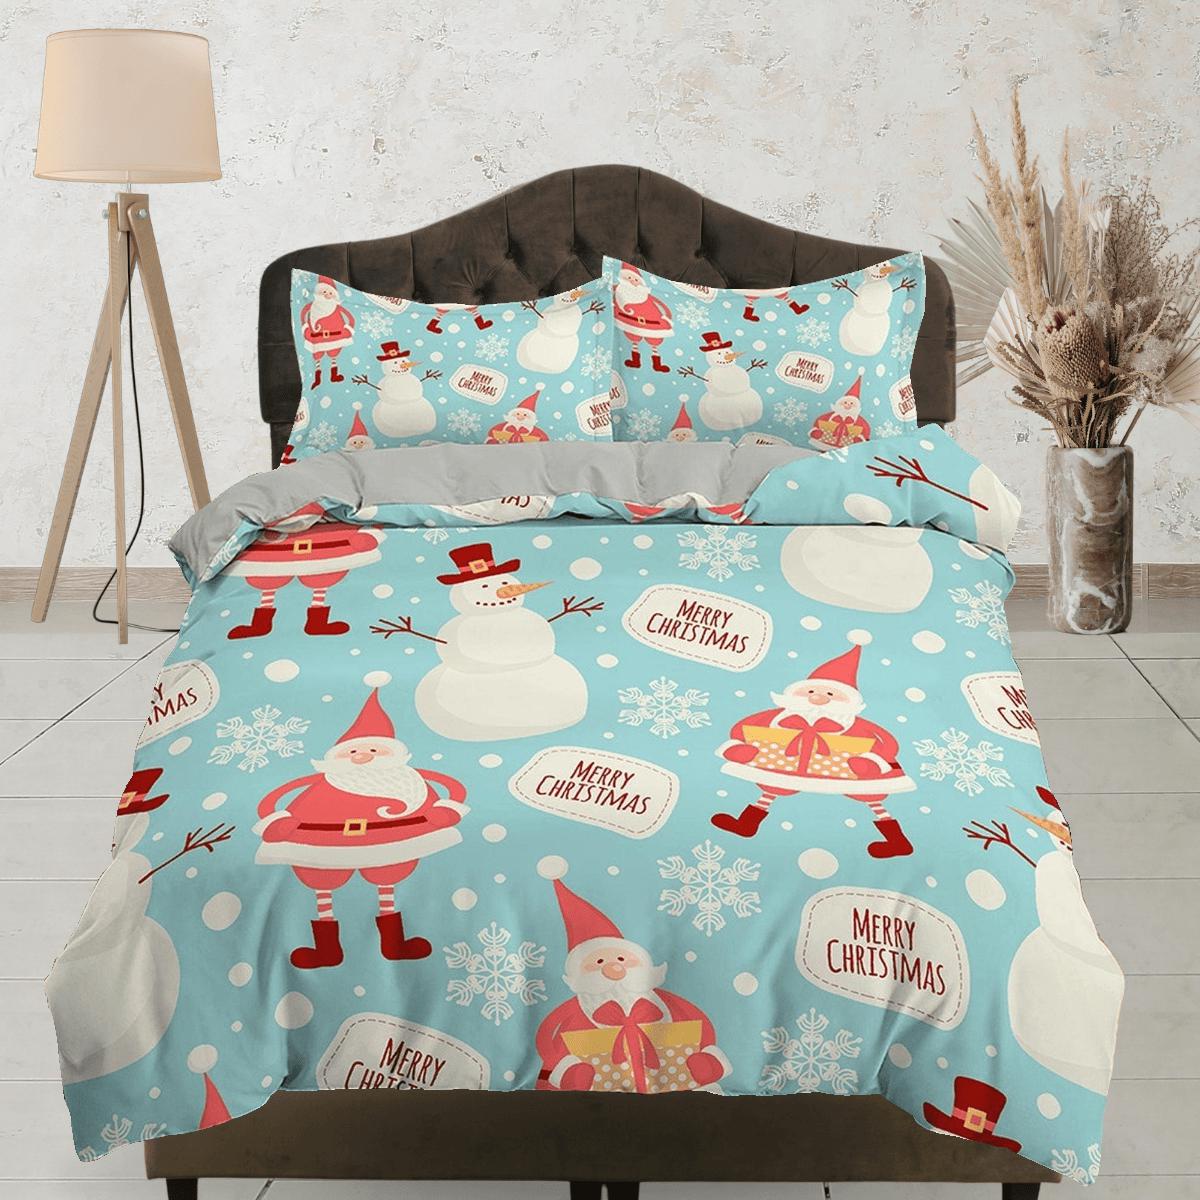 daintyduvet Snowman Santa Claus Christmas bedding, pillowcase holiday gift duvet cover king queen twin toddler bedding baby Christmas farmhouse decor